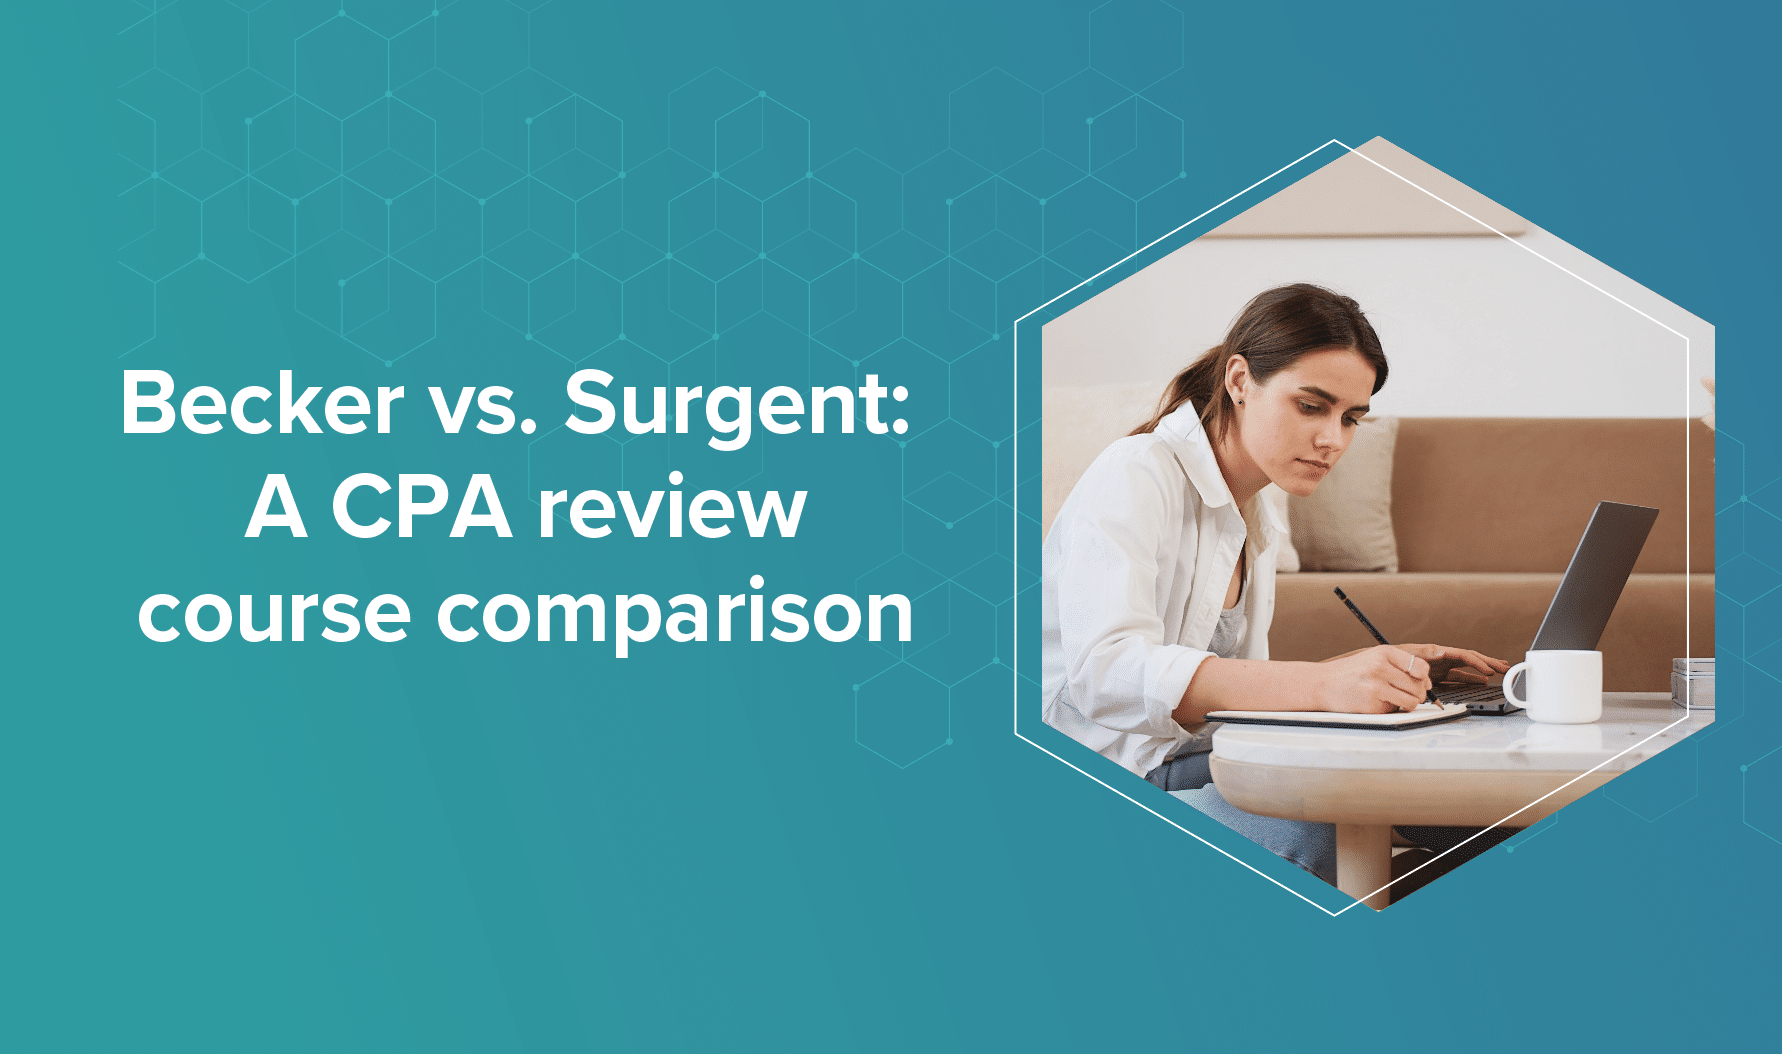 Becker vs. Surgent: A CPA review course comparison